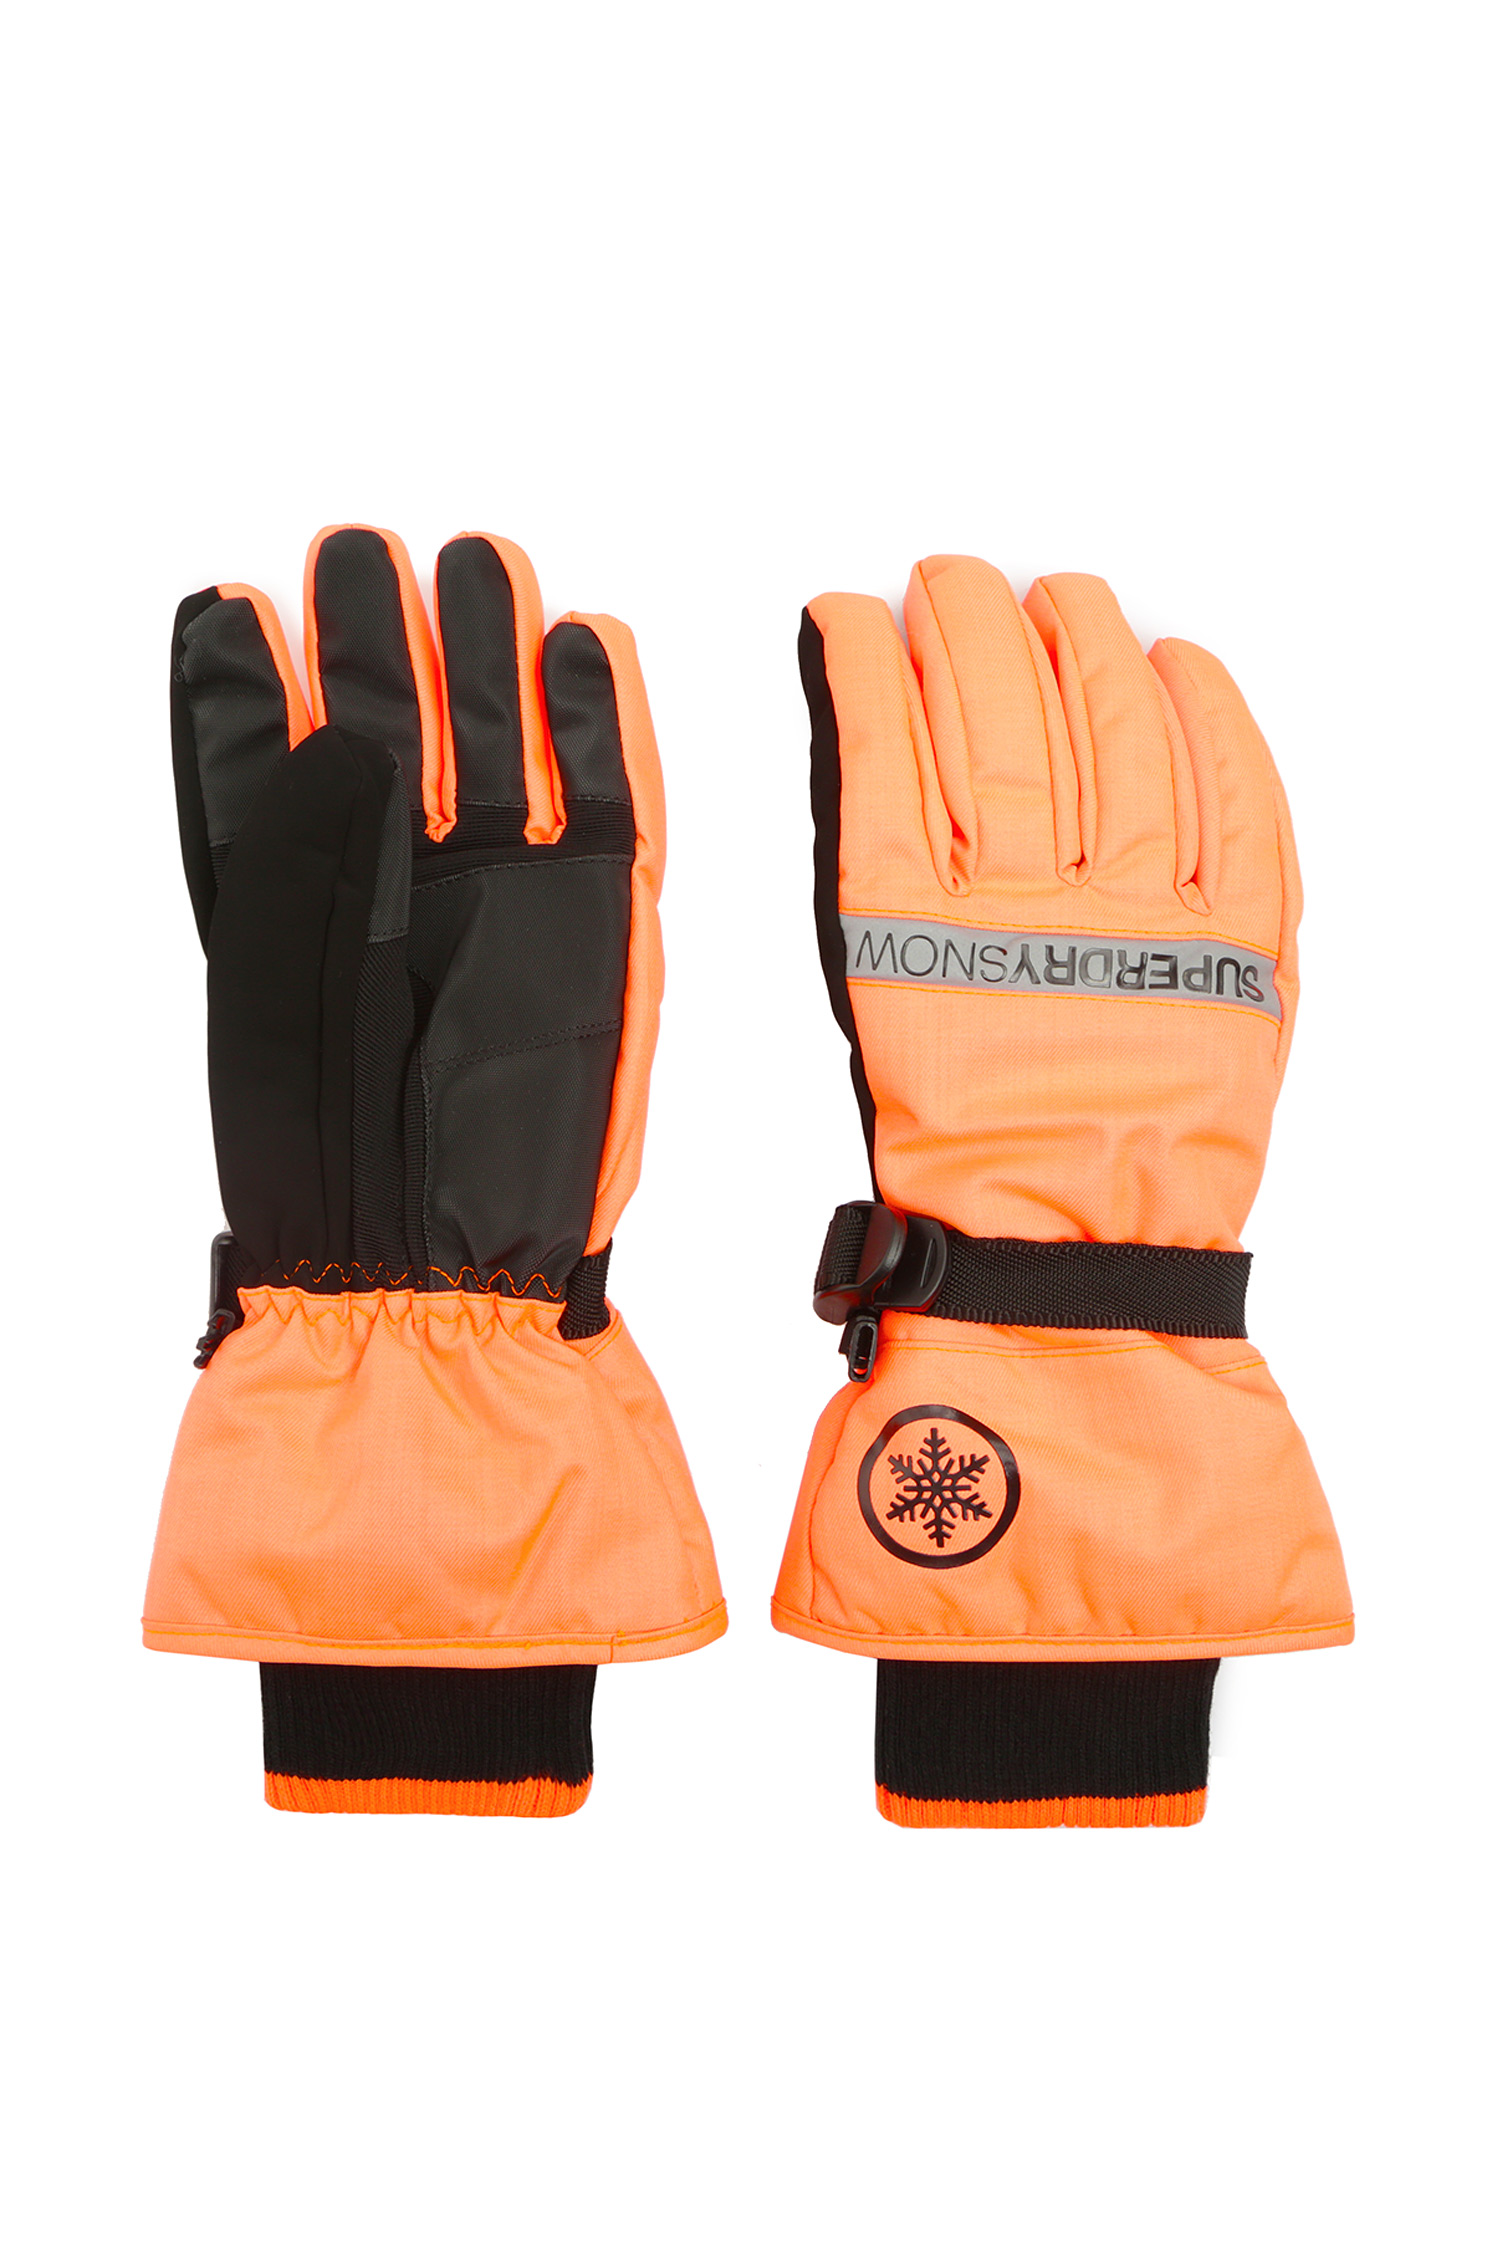 Мужские оранжевые перчатки SuperDry MS2017SR;KMO